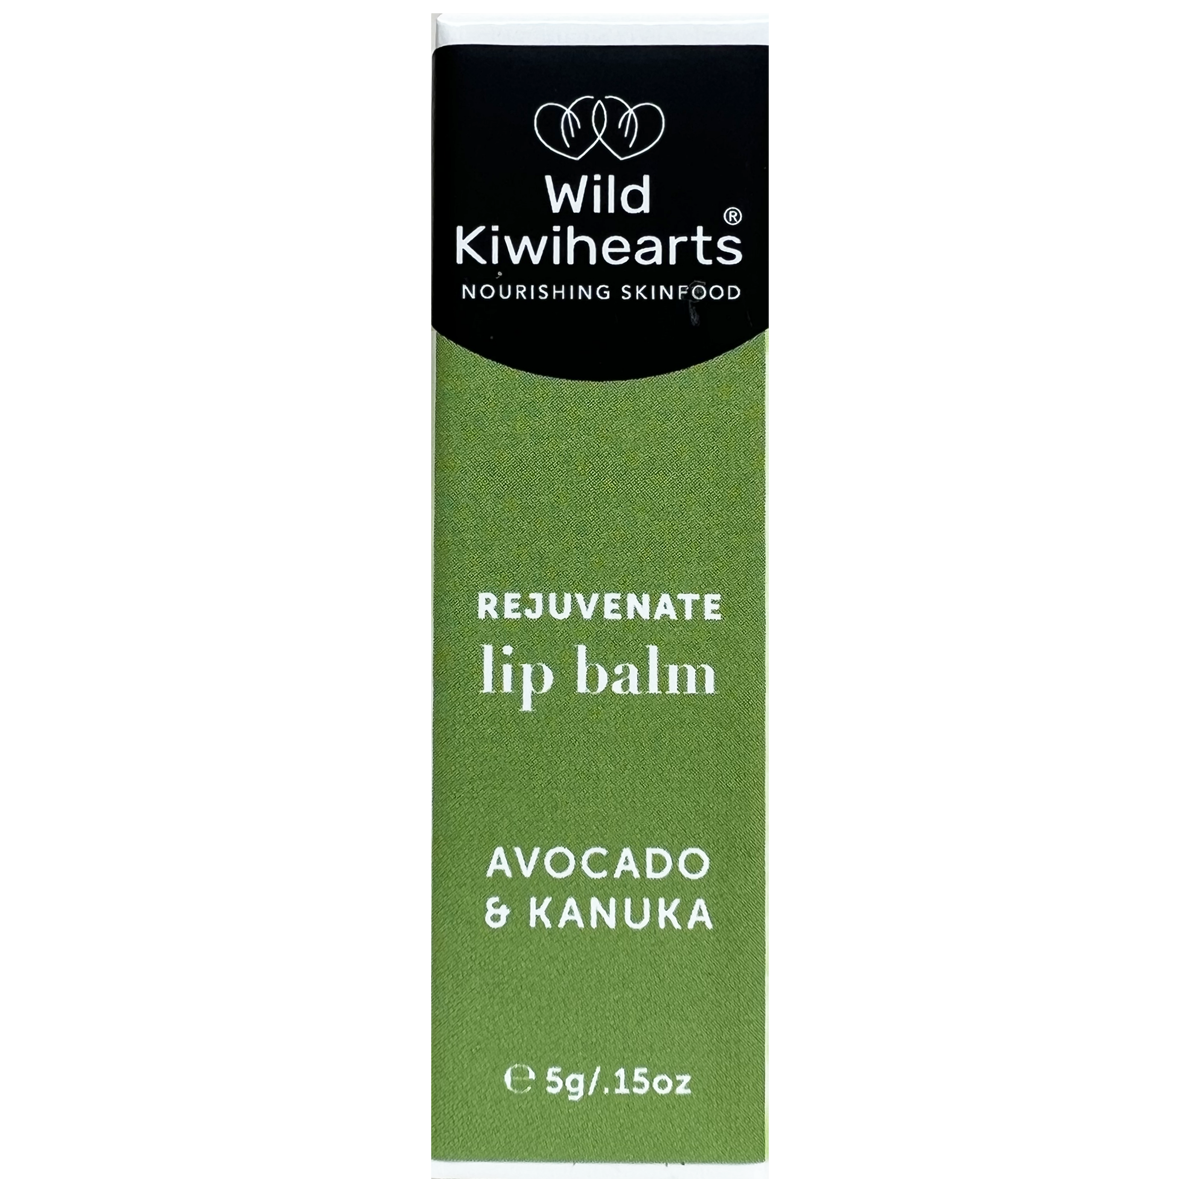 Wild Kiwihearts Lip balm – Rejuvenate